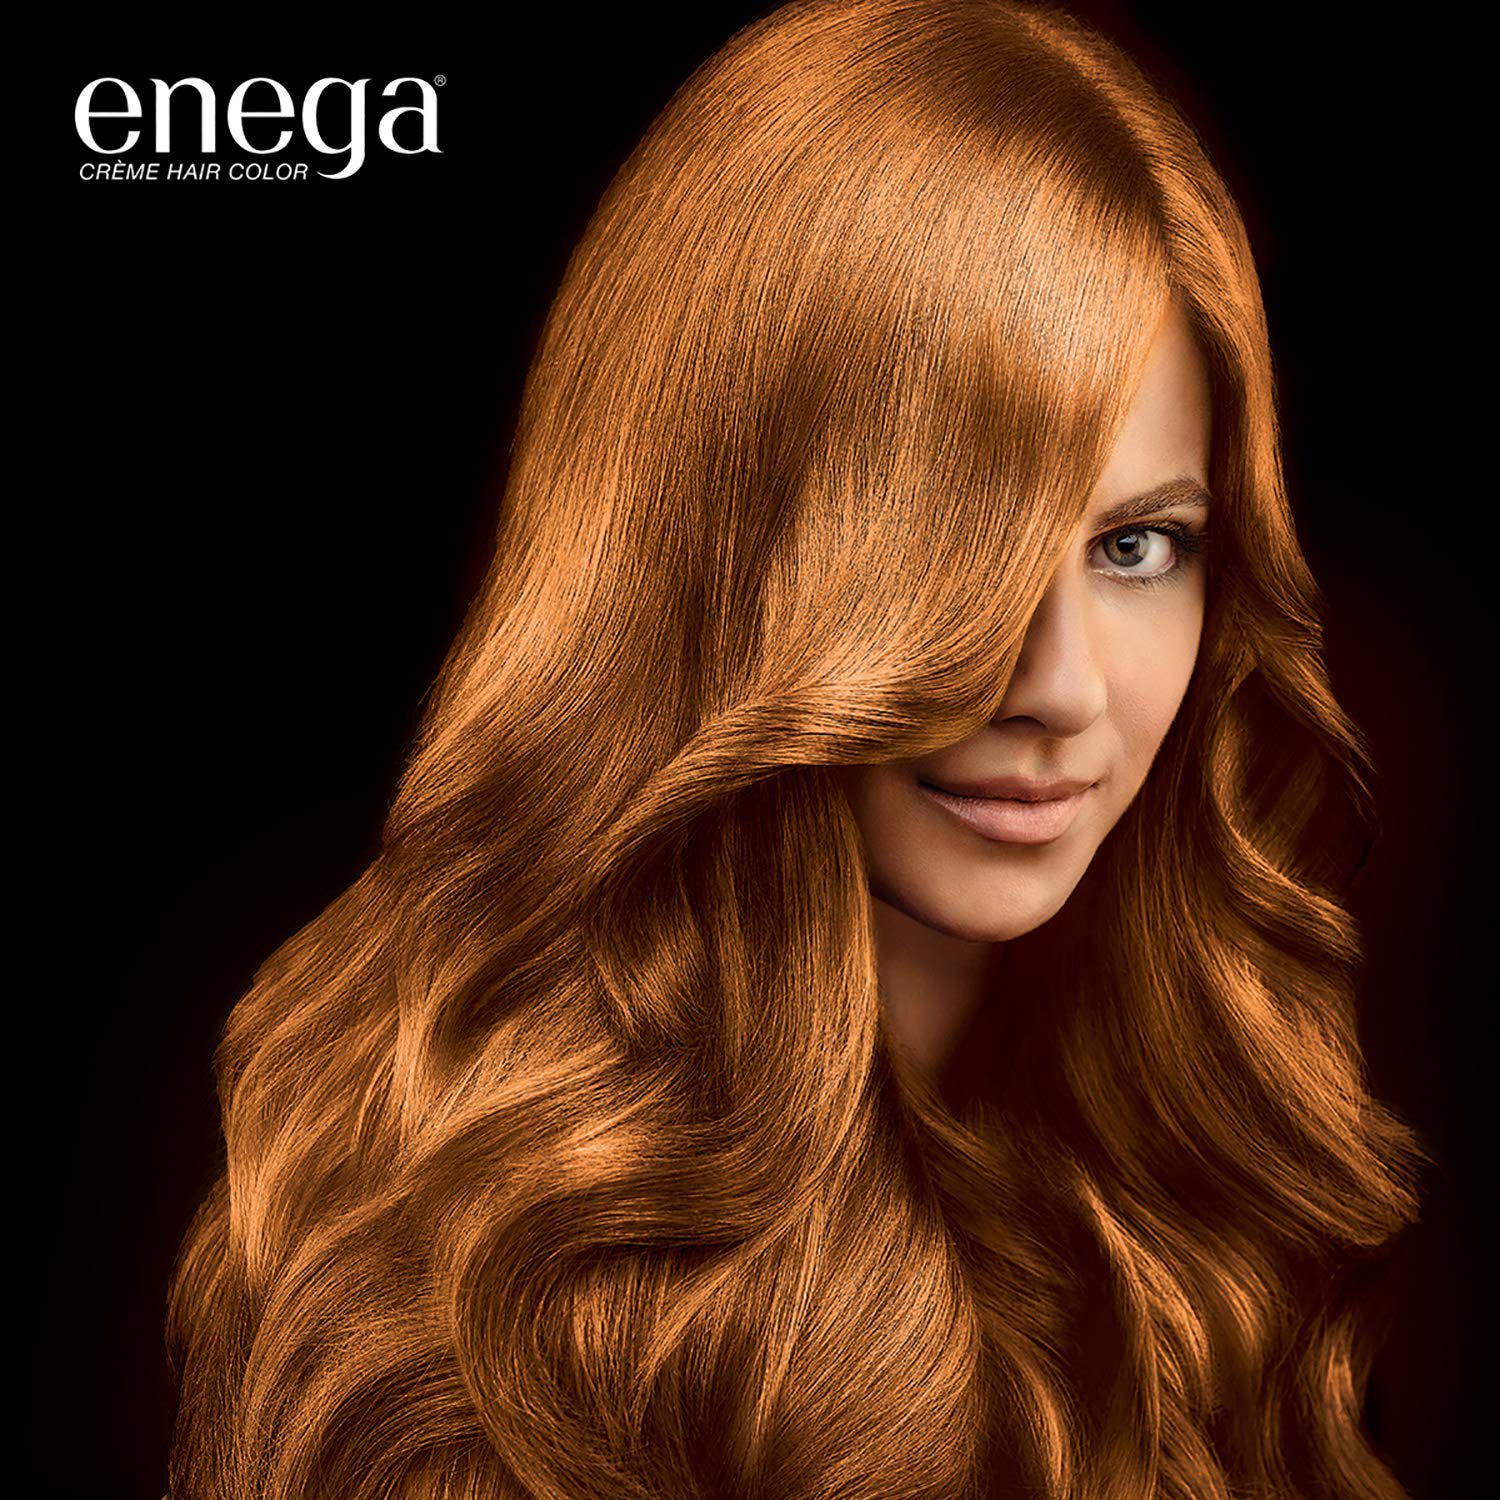 Enega Semi Permanent Hair Color Blonde Honey Blonde Pack Of 2 50ml